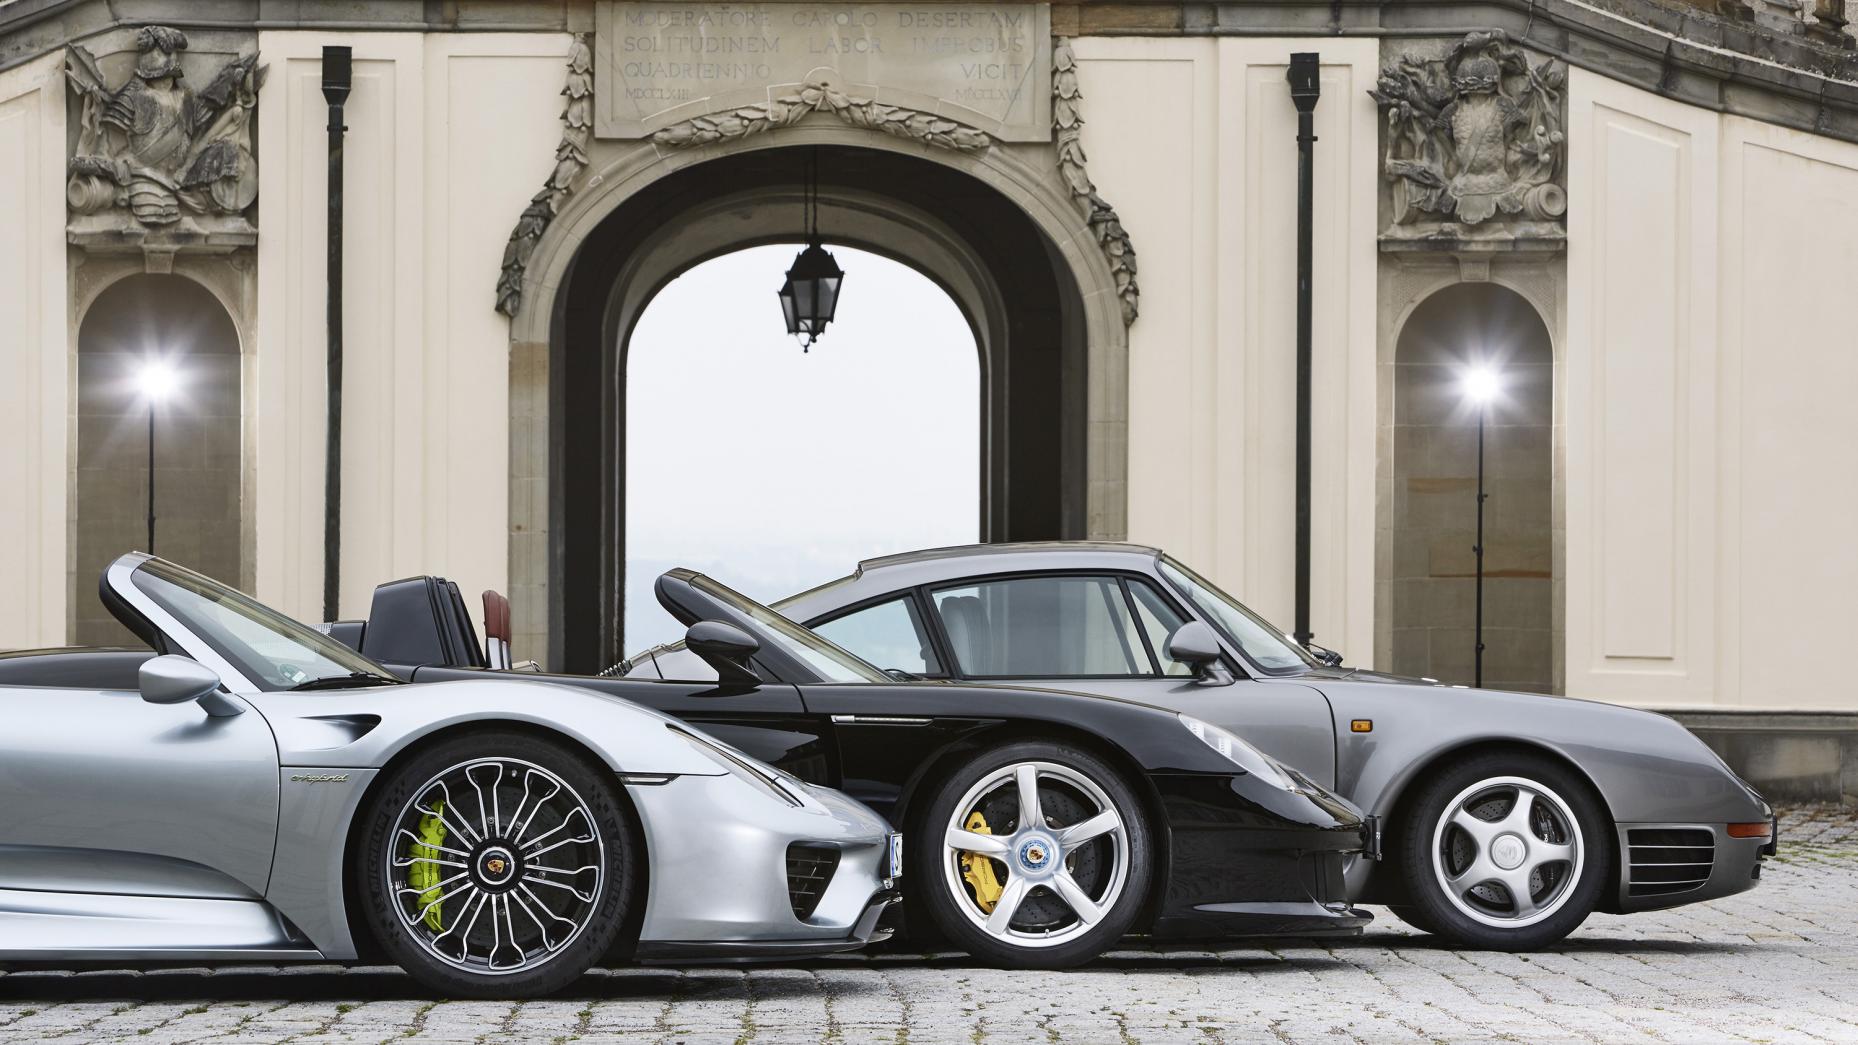 What's Porsche's most surprising moment?